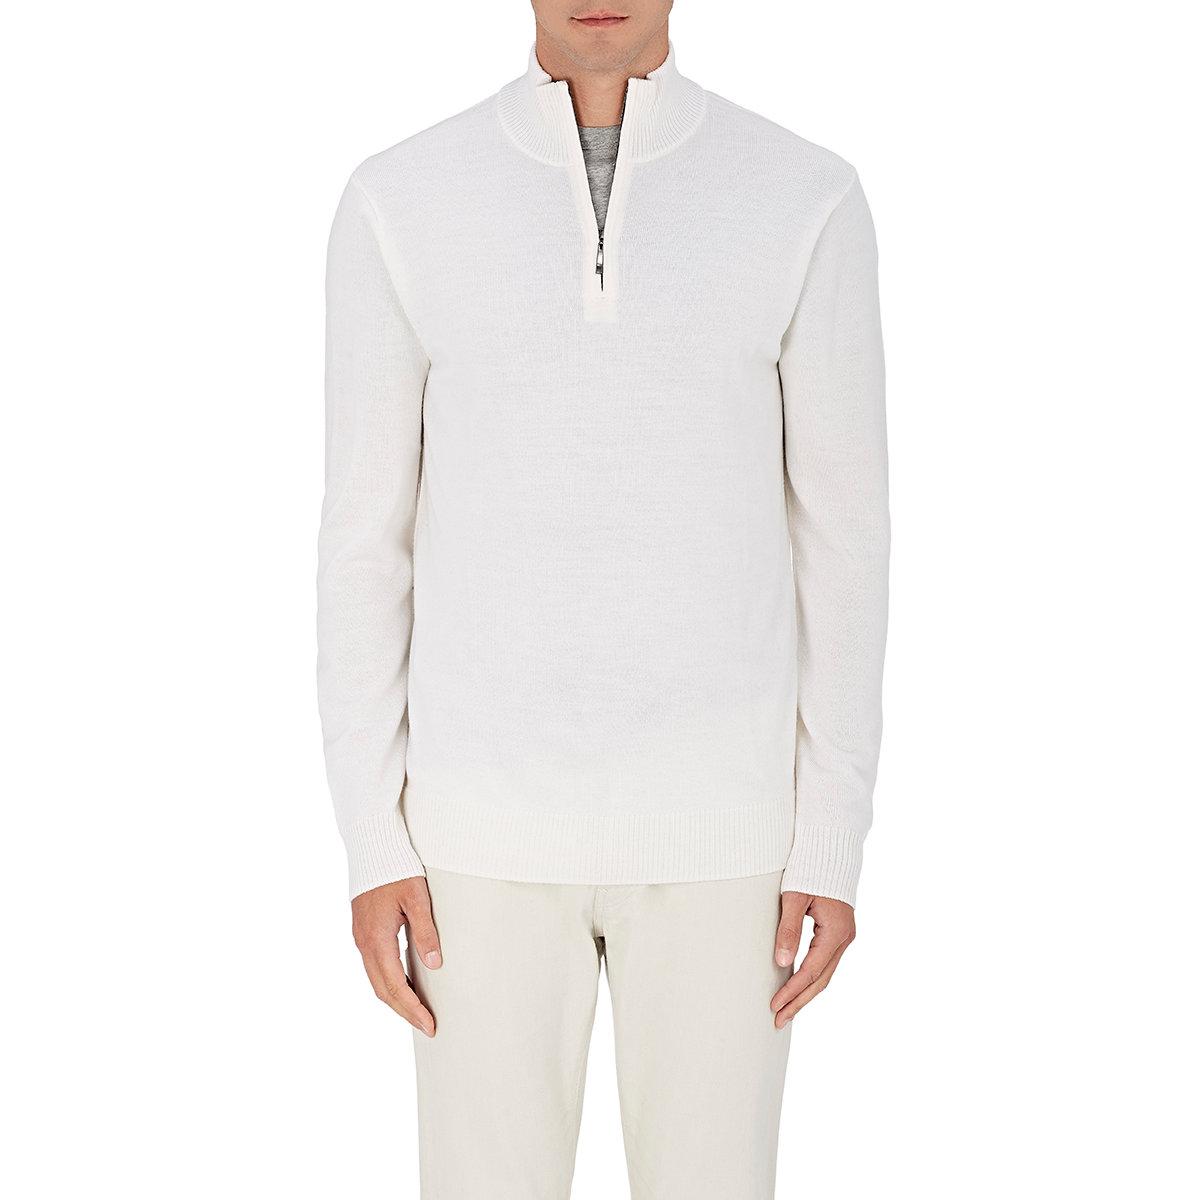 Lyst - Barneys New York Wool Mock Turtleneck Sweater in White for Men